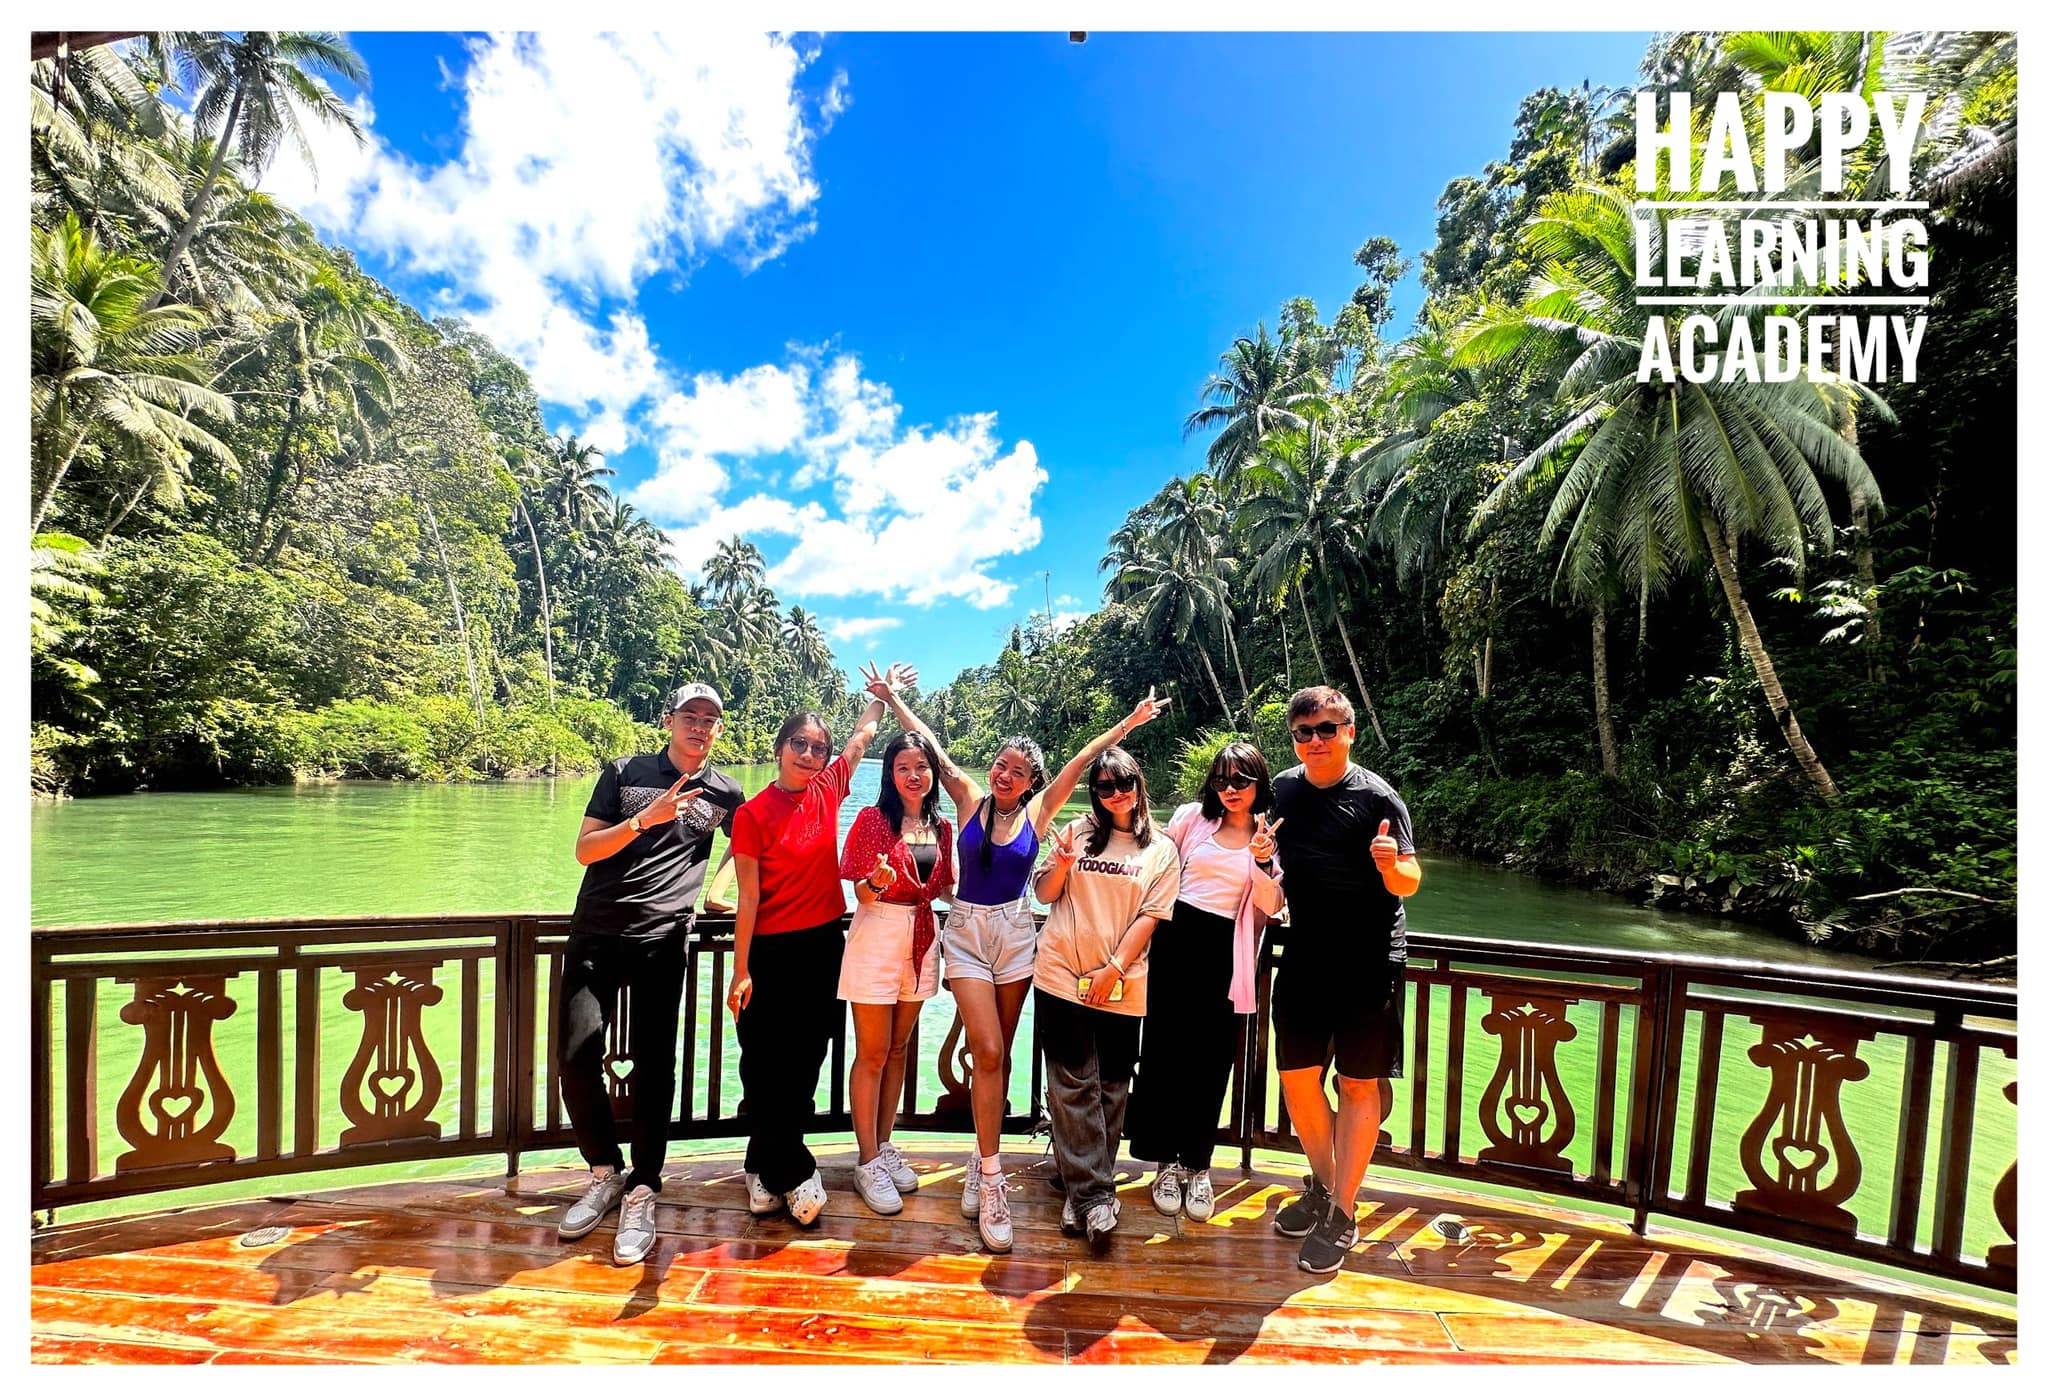 Sau những giờ học tại trường, các học viên tham quan, du lịch trải nghiệmnhững địa điểm thú vị tại đất nước nghìn đảo Philippines.